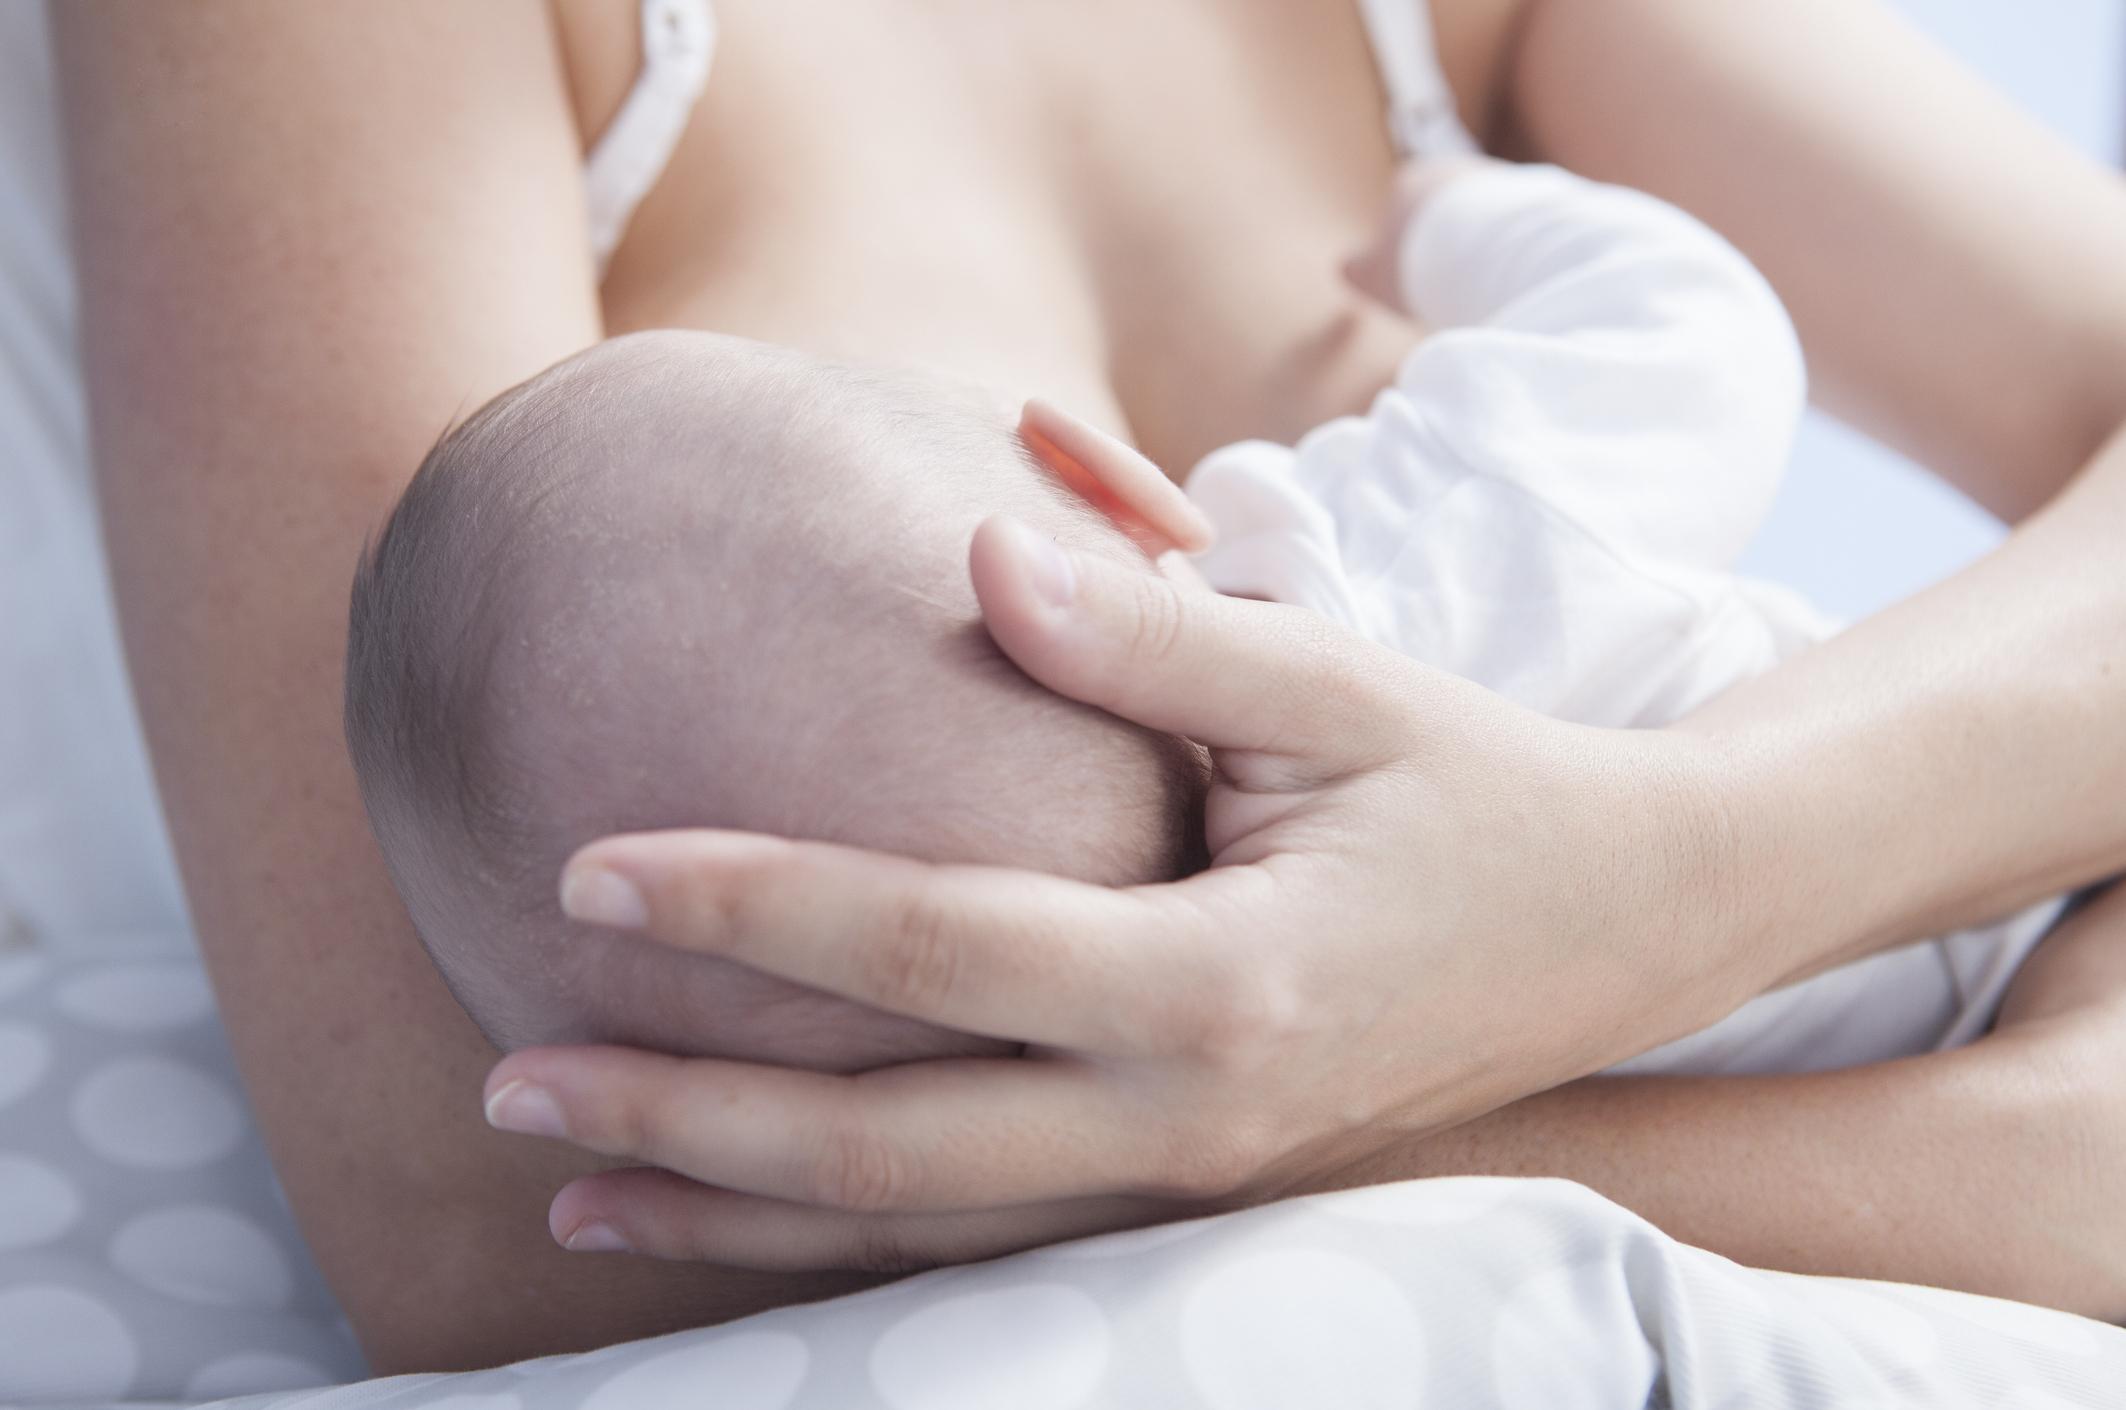 Para que o momento da amamentação seja tranquilo, é essencial que você esteja preparada psicológica e fisicamente para dar o leite ao seu bebê